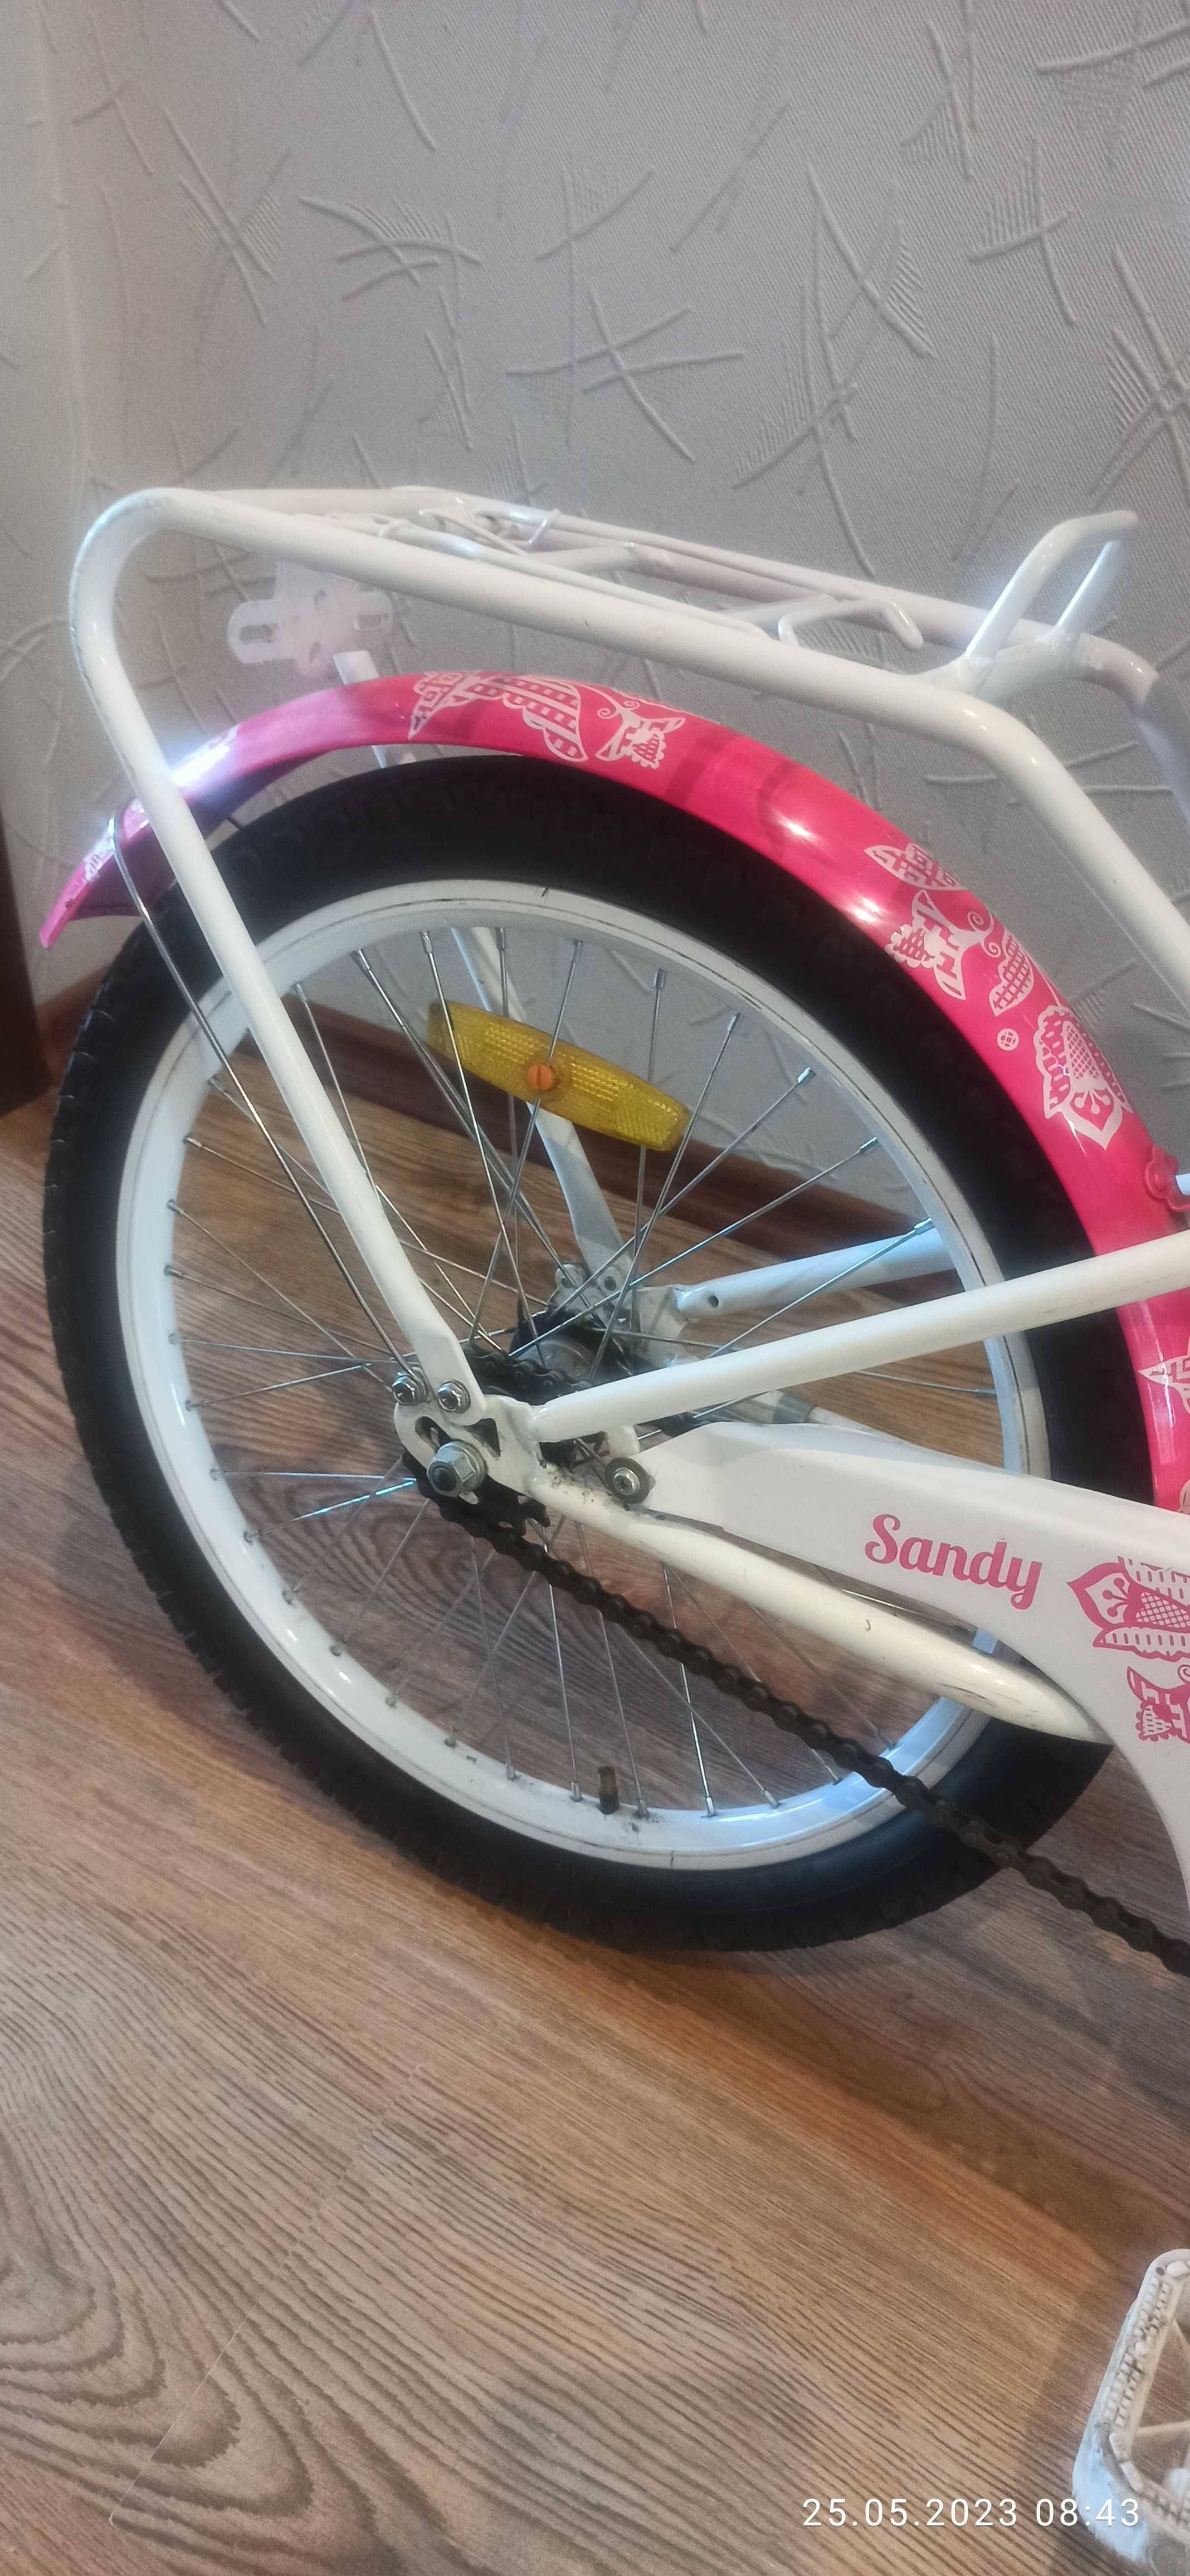 Продам детский велосипед Praid Sandy 20.